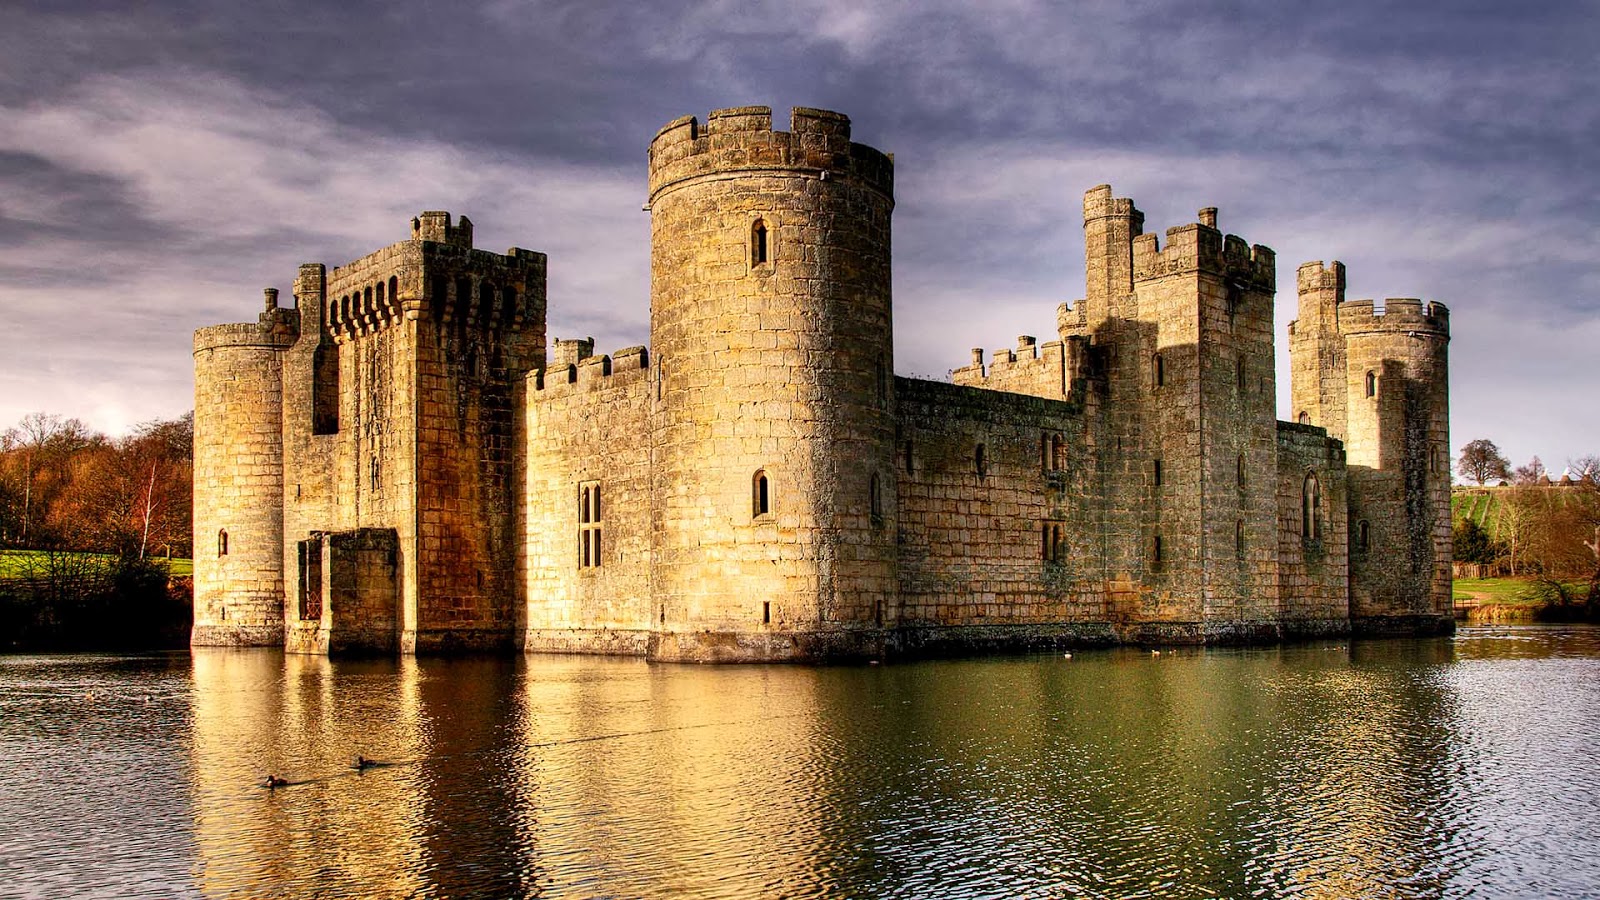 fond d'écran château hd,voie navigable,château,château d'eau,fortification,architecture médiévale